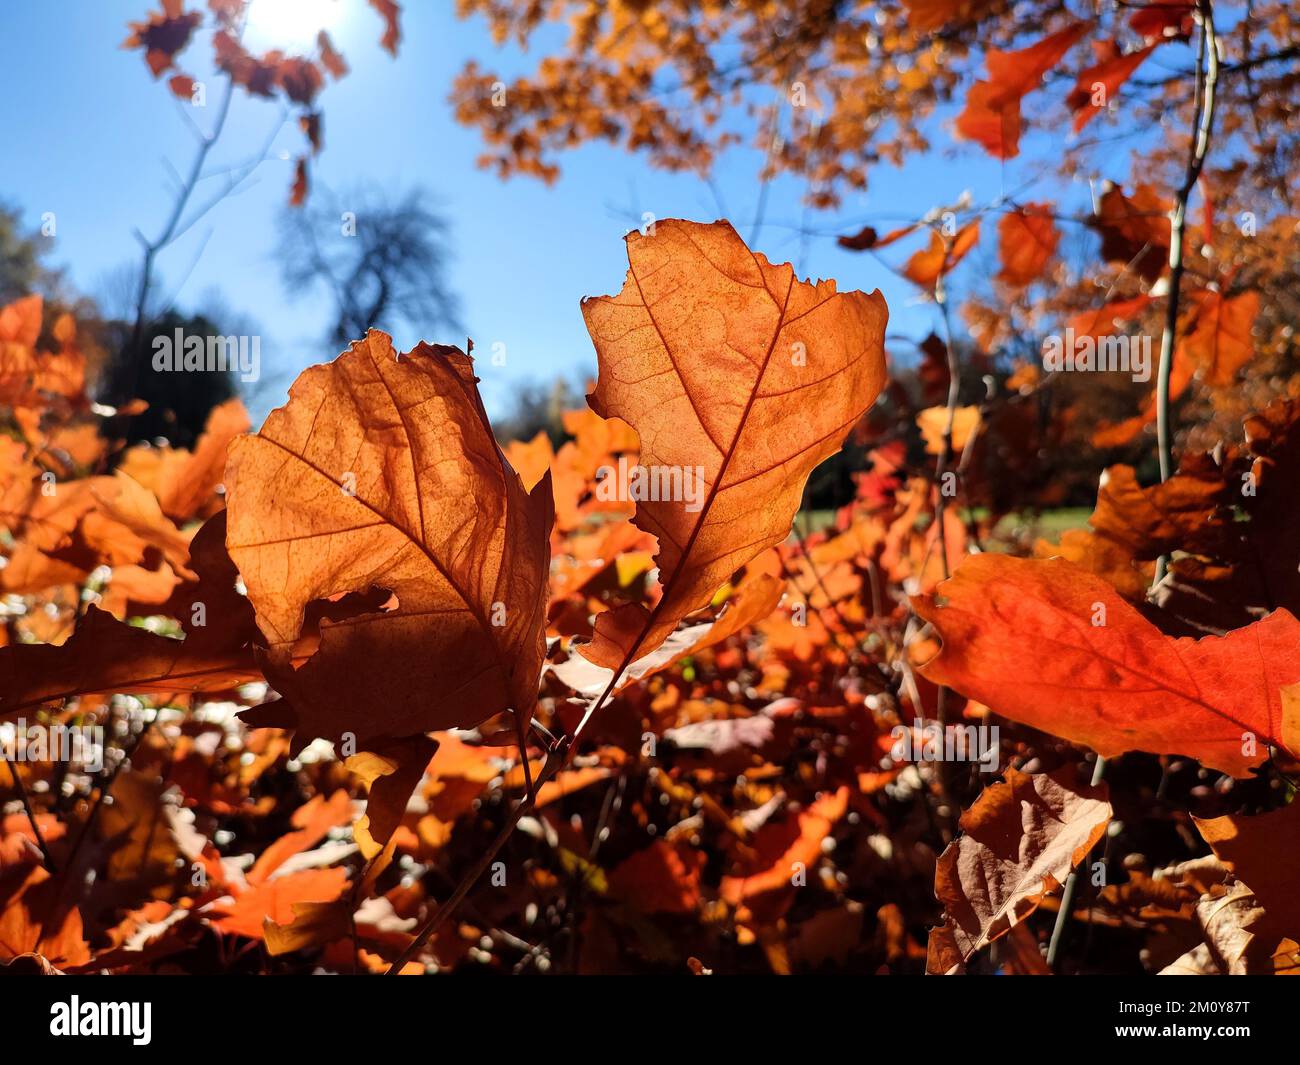 Rote orangefarbene Eichenblätter, hell erleuchtet von der Sonne im Wald an einem sonnigen Herbsttag aus der Nähe. Wälder, Wälder, Natur im Herbst, saisonale Kulisse. Wunderschöner natürlicher Hintergrund. Naturumgebung Stockfoto